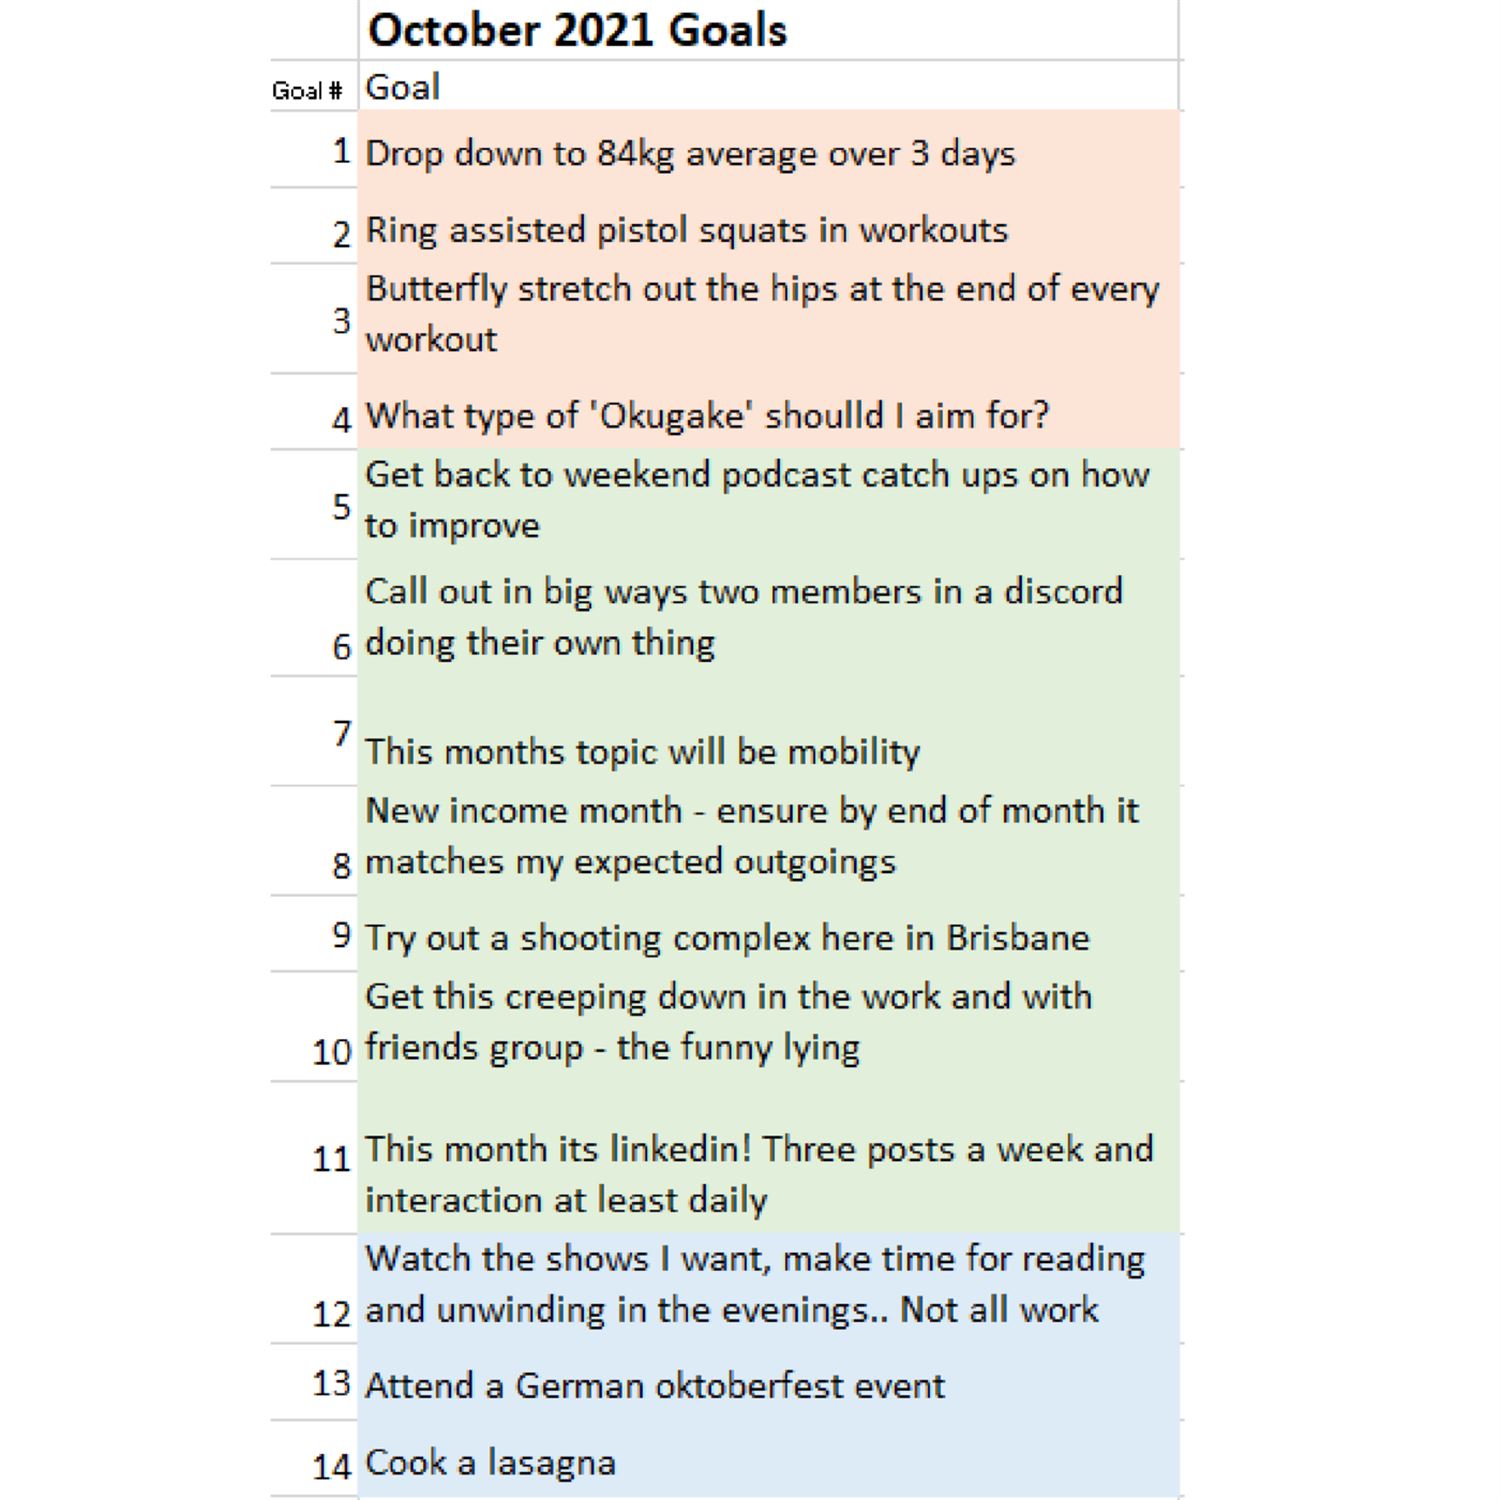 Juan's first 7 October goals